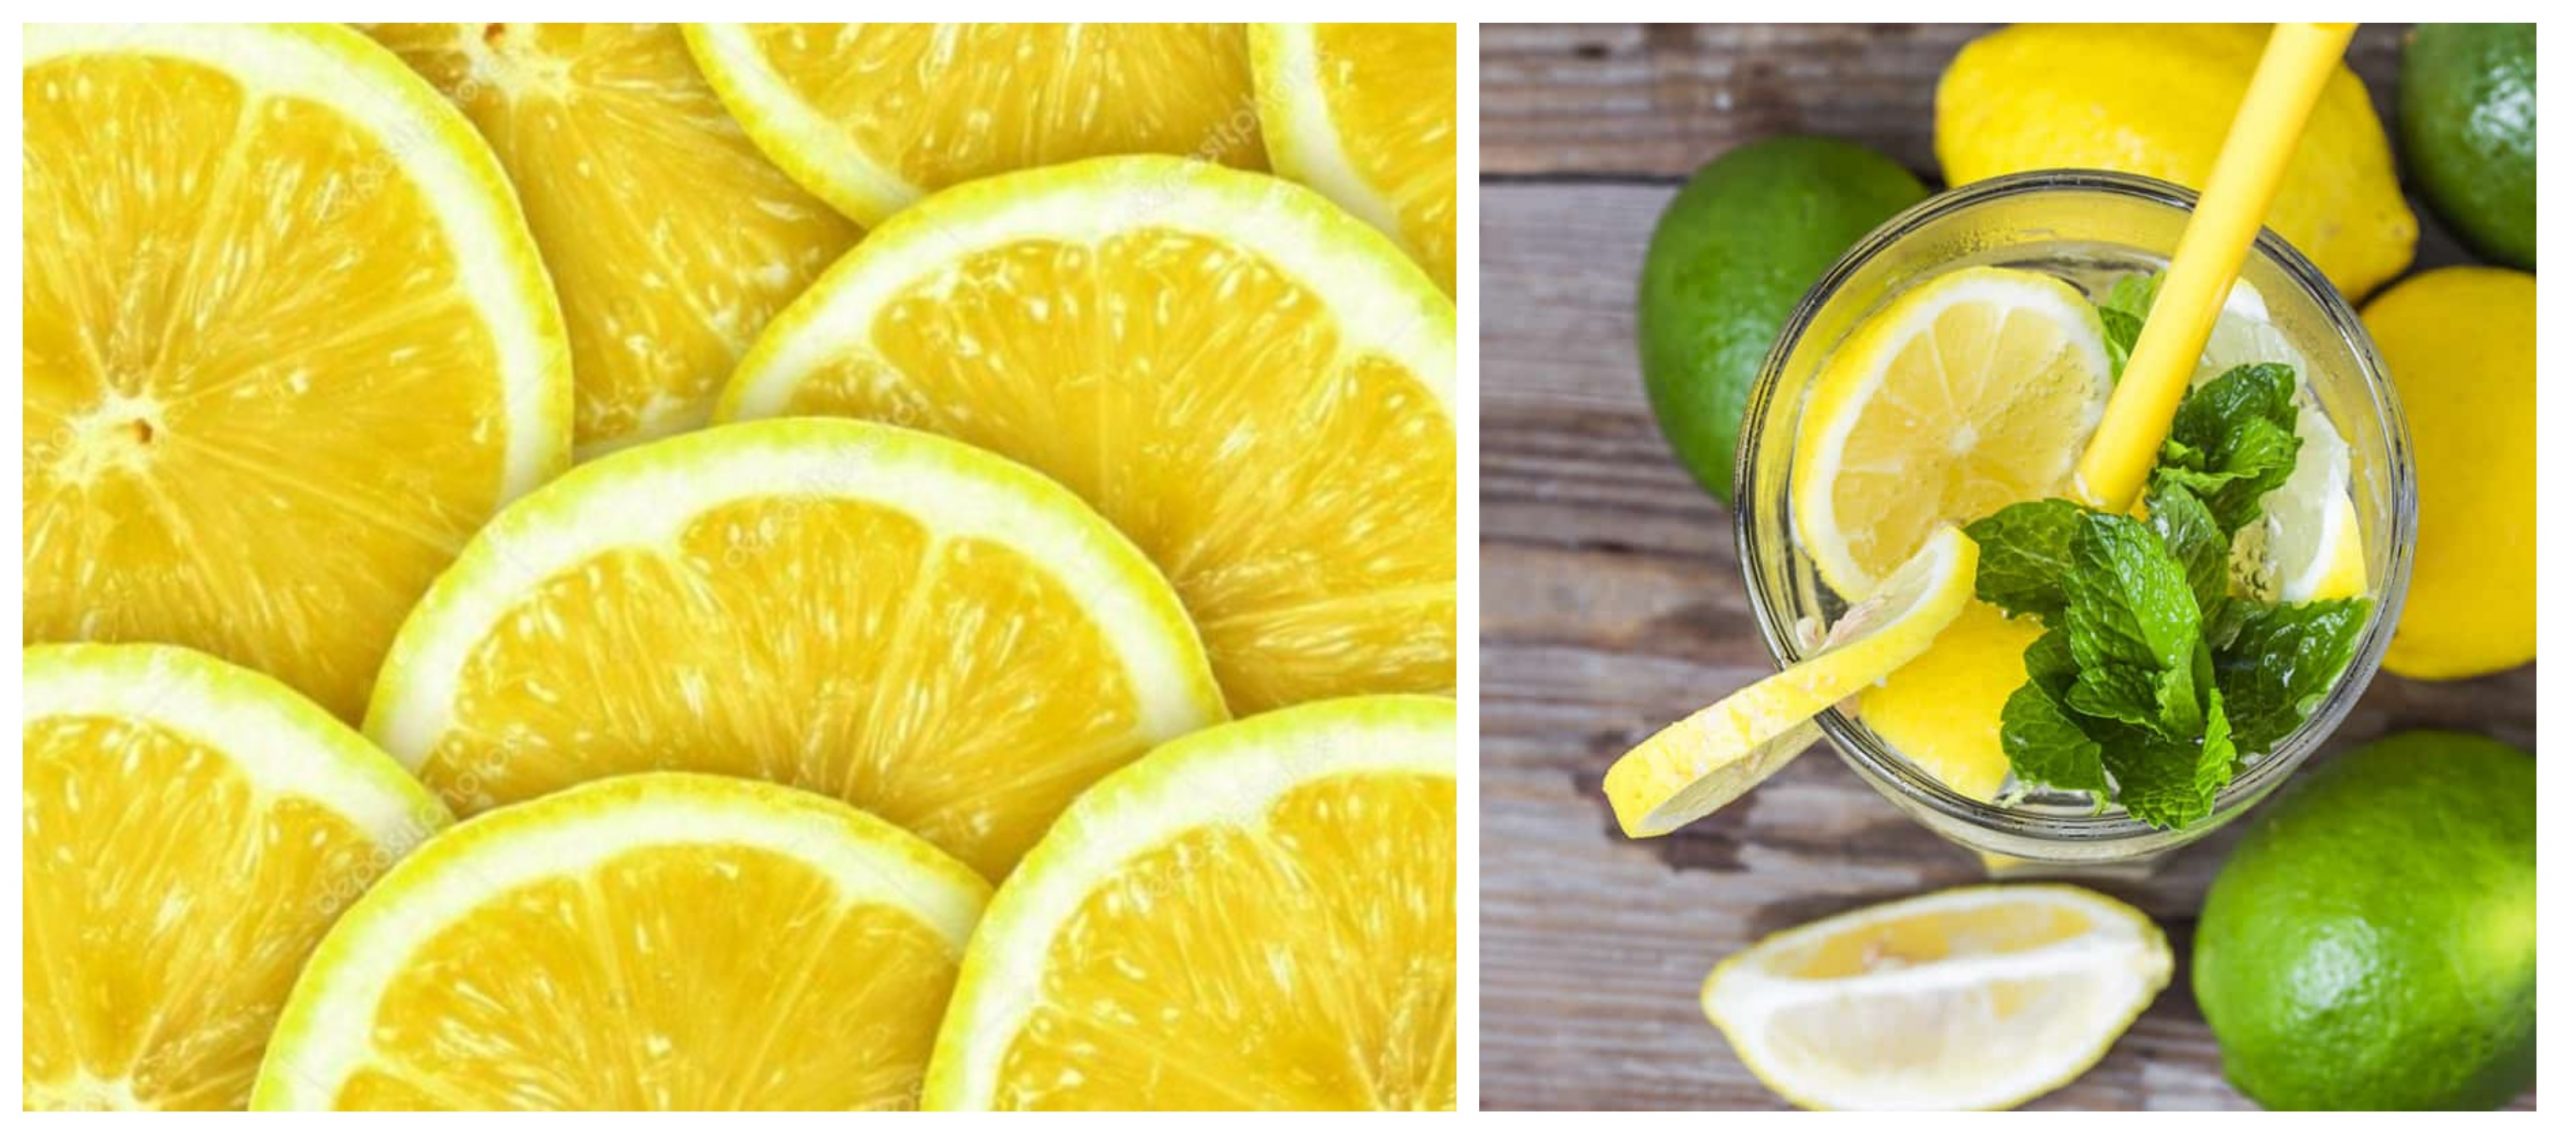 6  فوائد صحية لتناول الليمون مبنية على الأدلة العلمية الموثقة